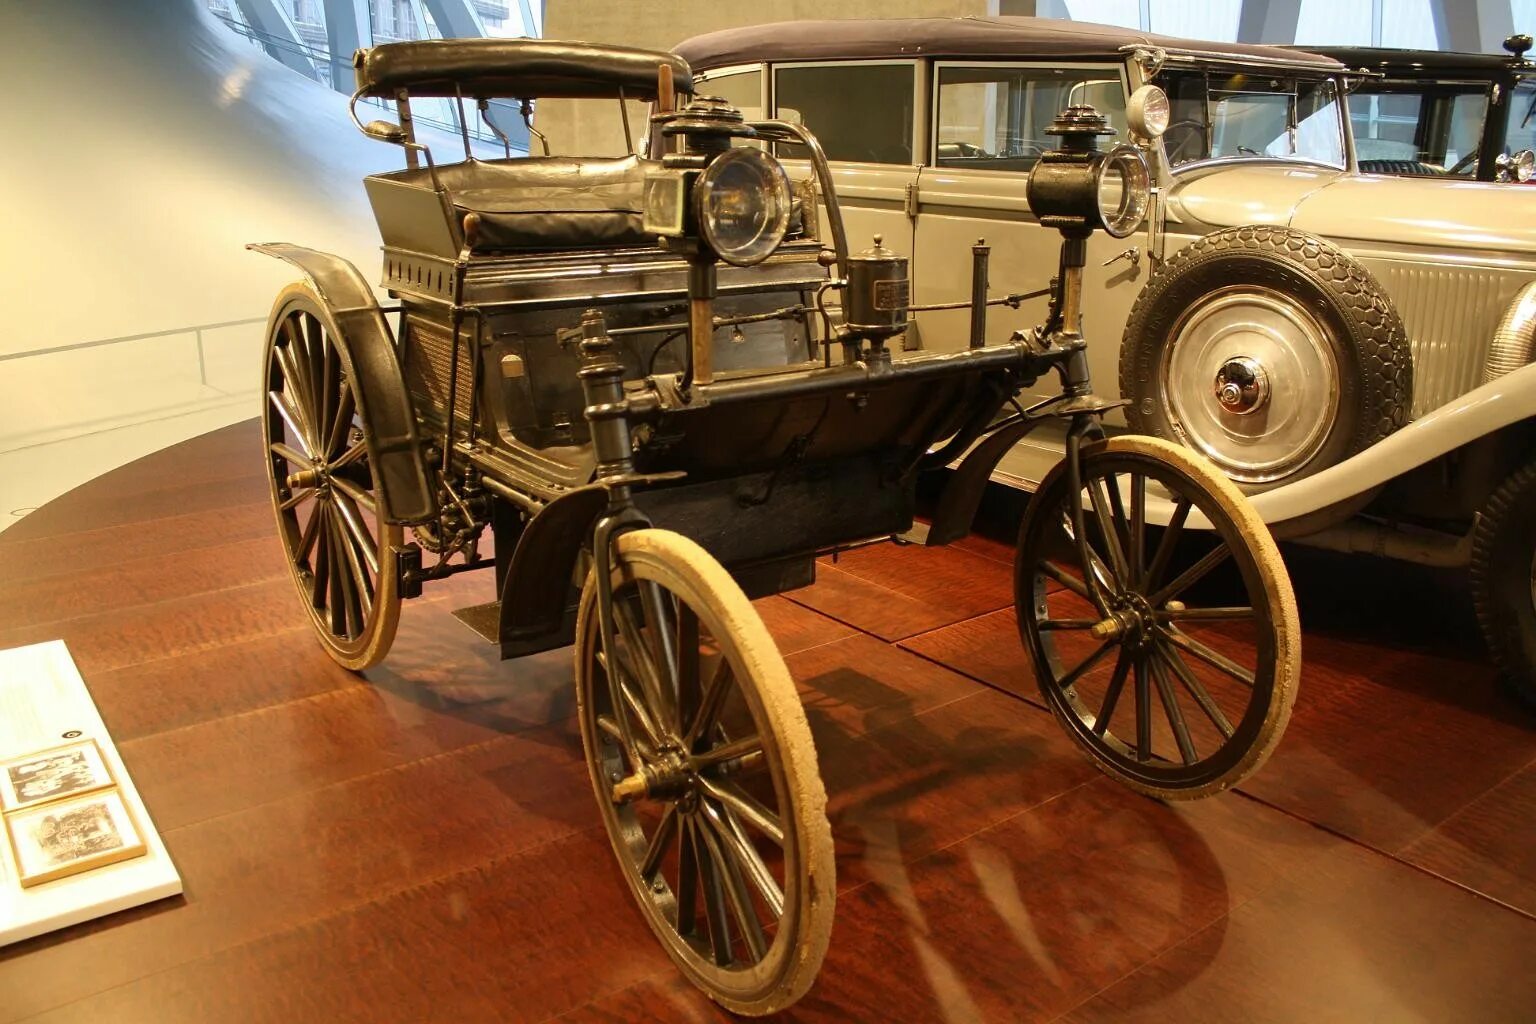 1 автомобиль мерседес. Даймлер автомобиль 1895. Автомобиль Мерседес 1899 Даймлер. Автомобиль Даймлер 1895 год. Первый автомобиль Мерседес 1899.